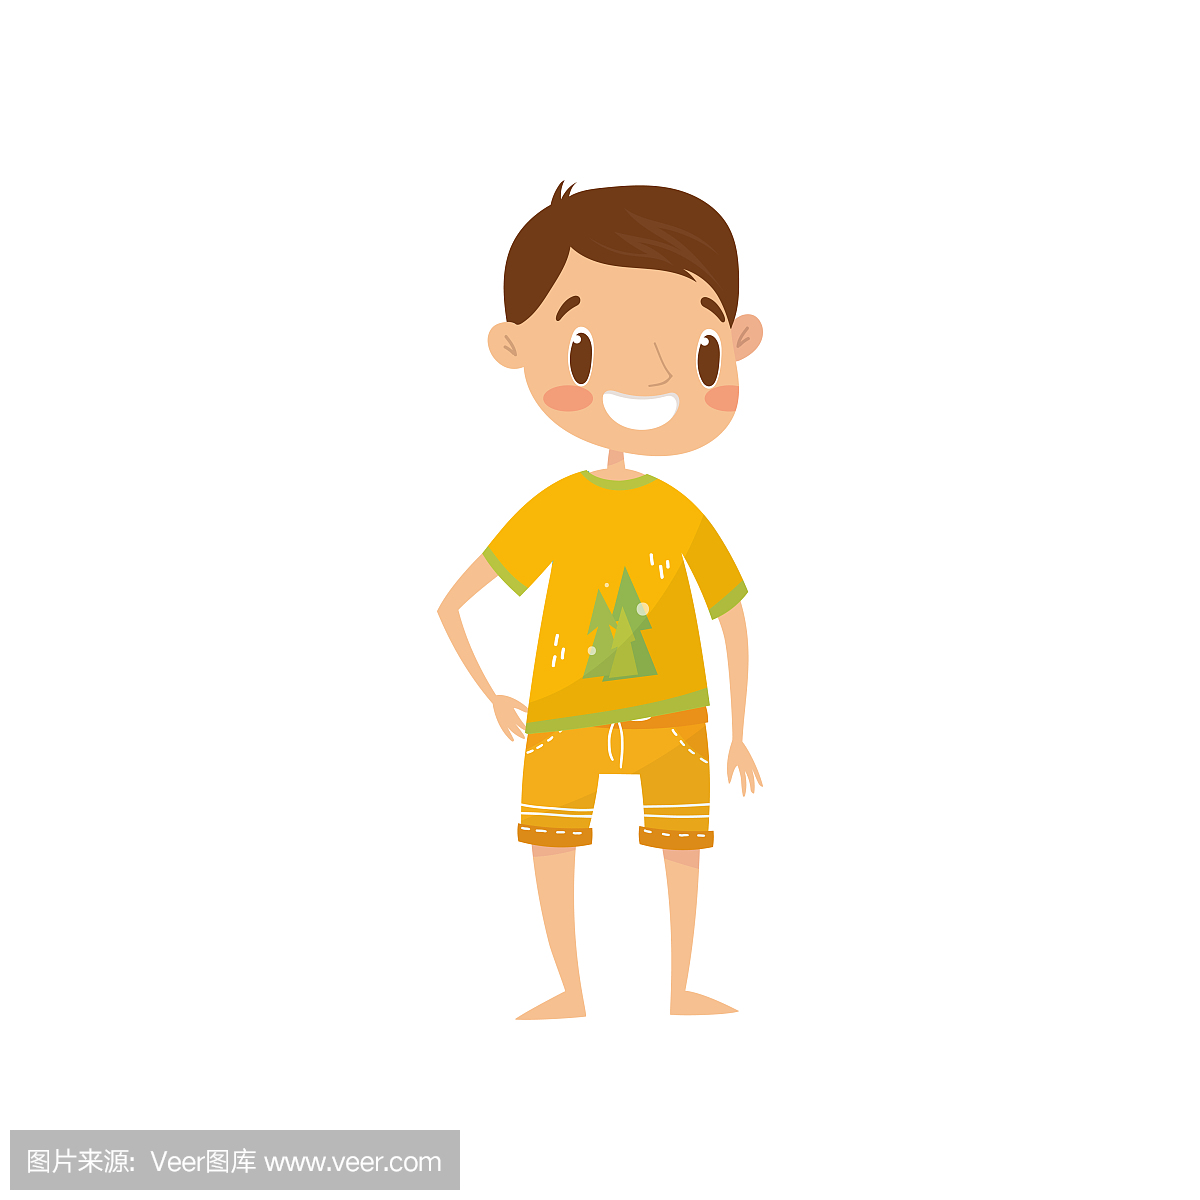 微笑的男孩在休闲夏季的衣服,橙色衬衫和短裤